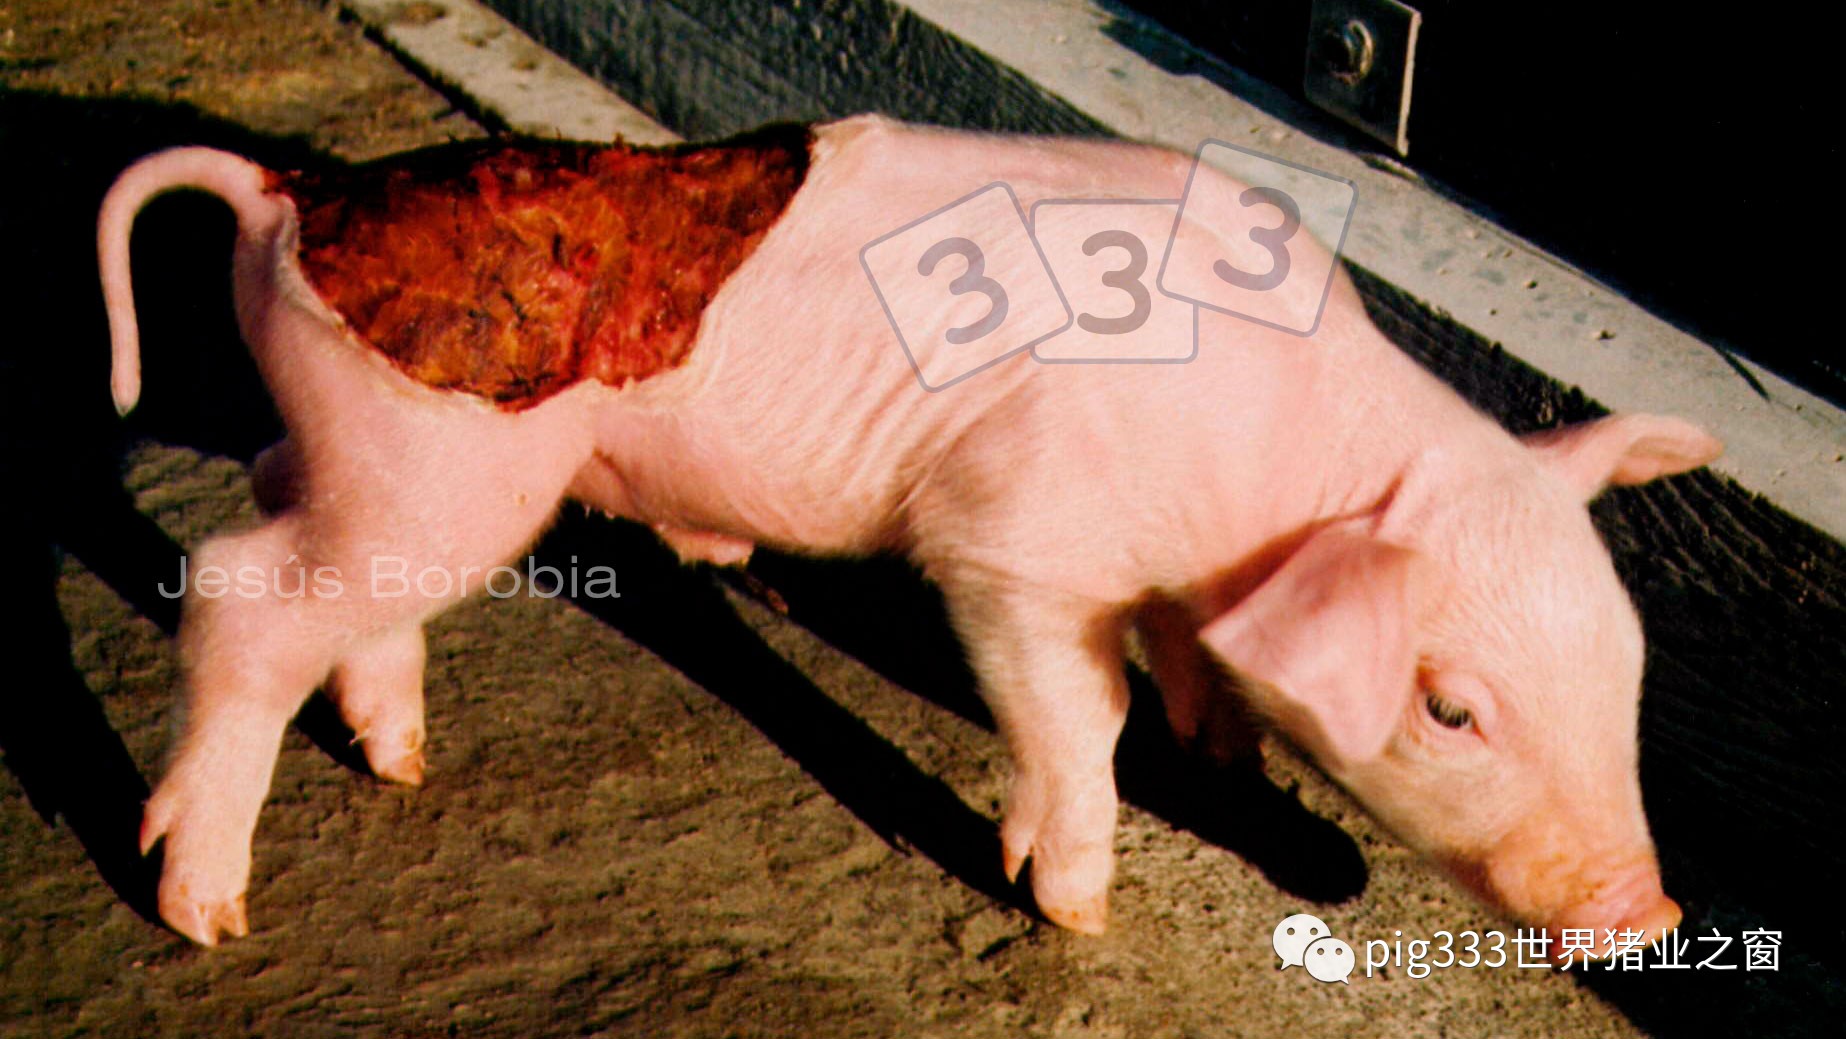 该状况是小猪出生时身体一定区域没有皮肤覆盖.